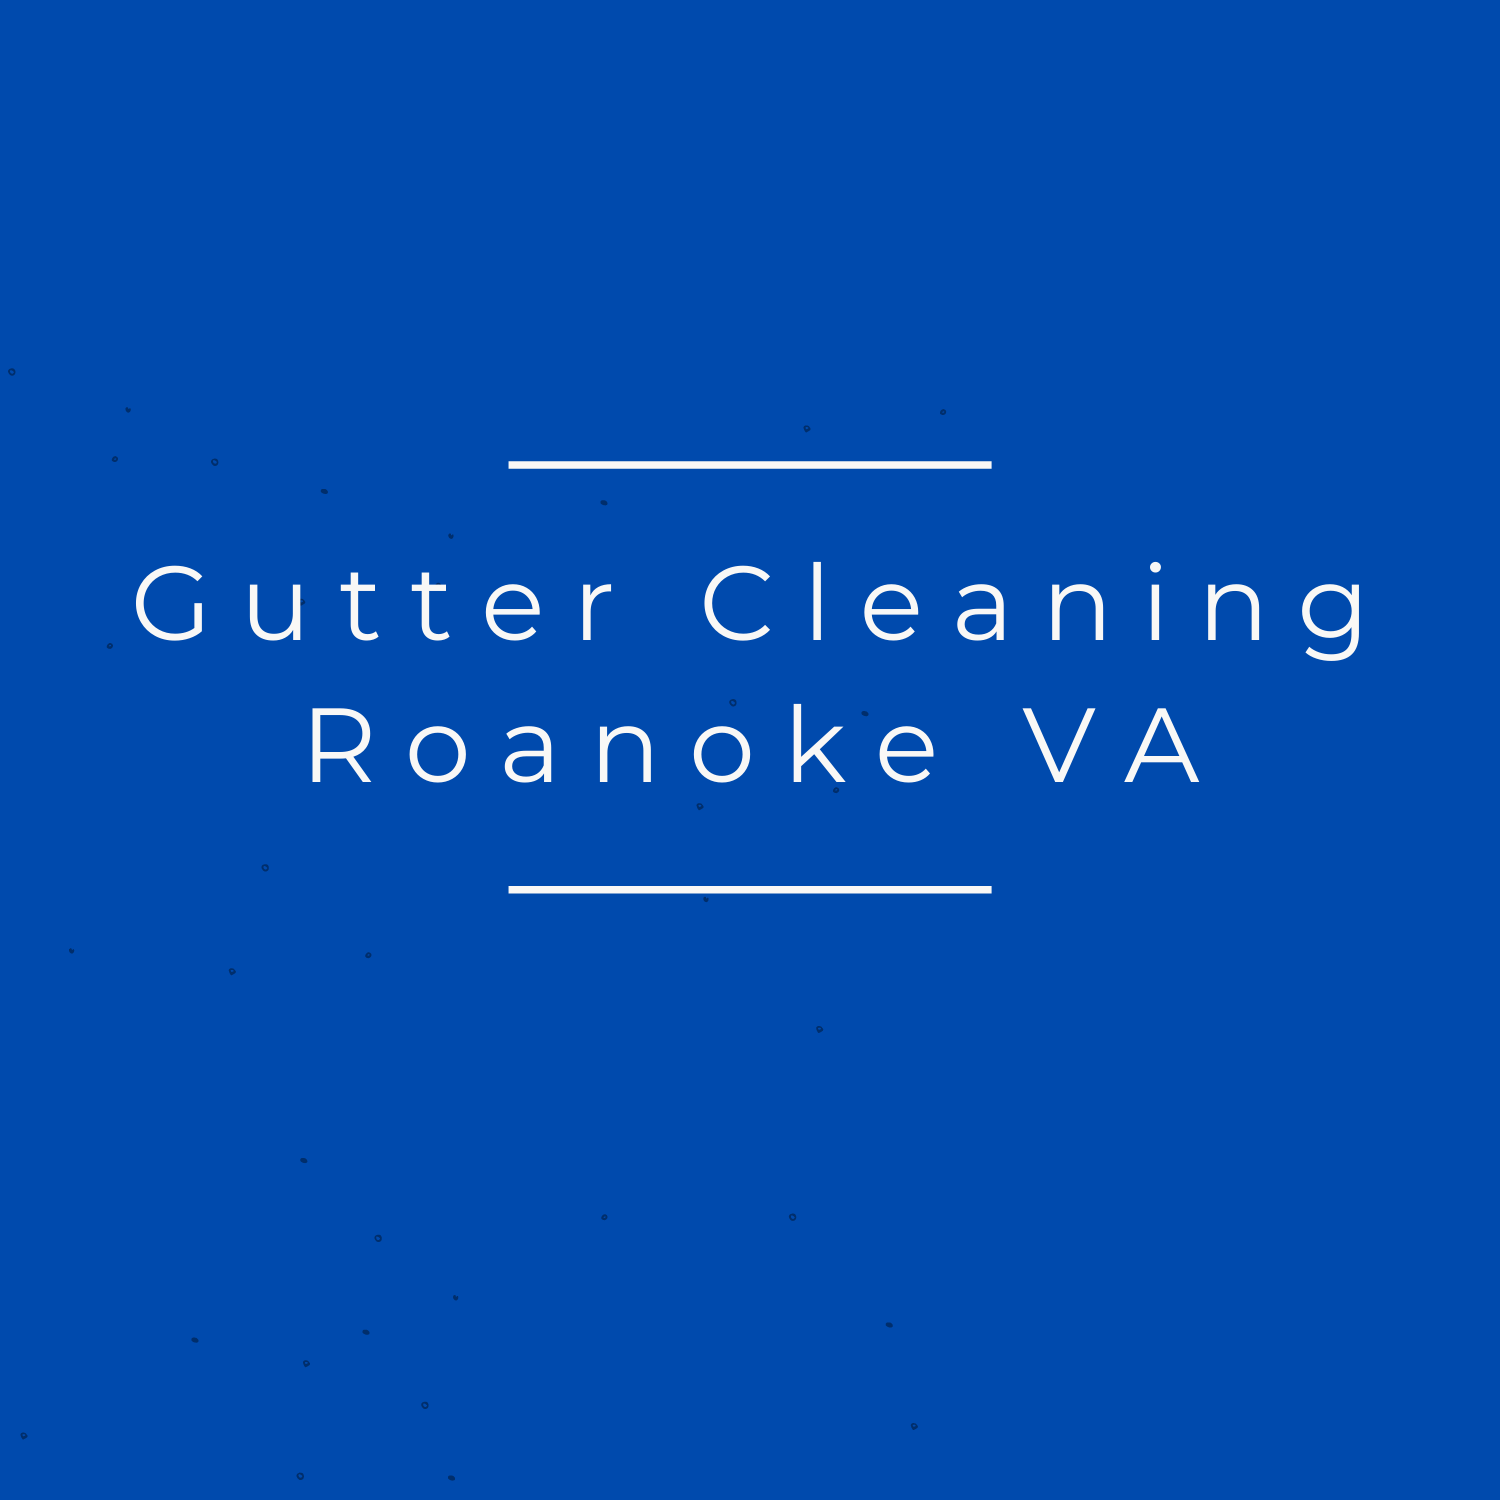 Gutter Cleaning Roanoke VA